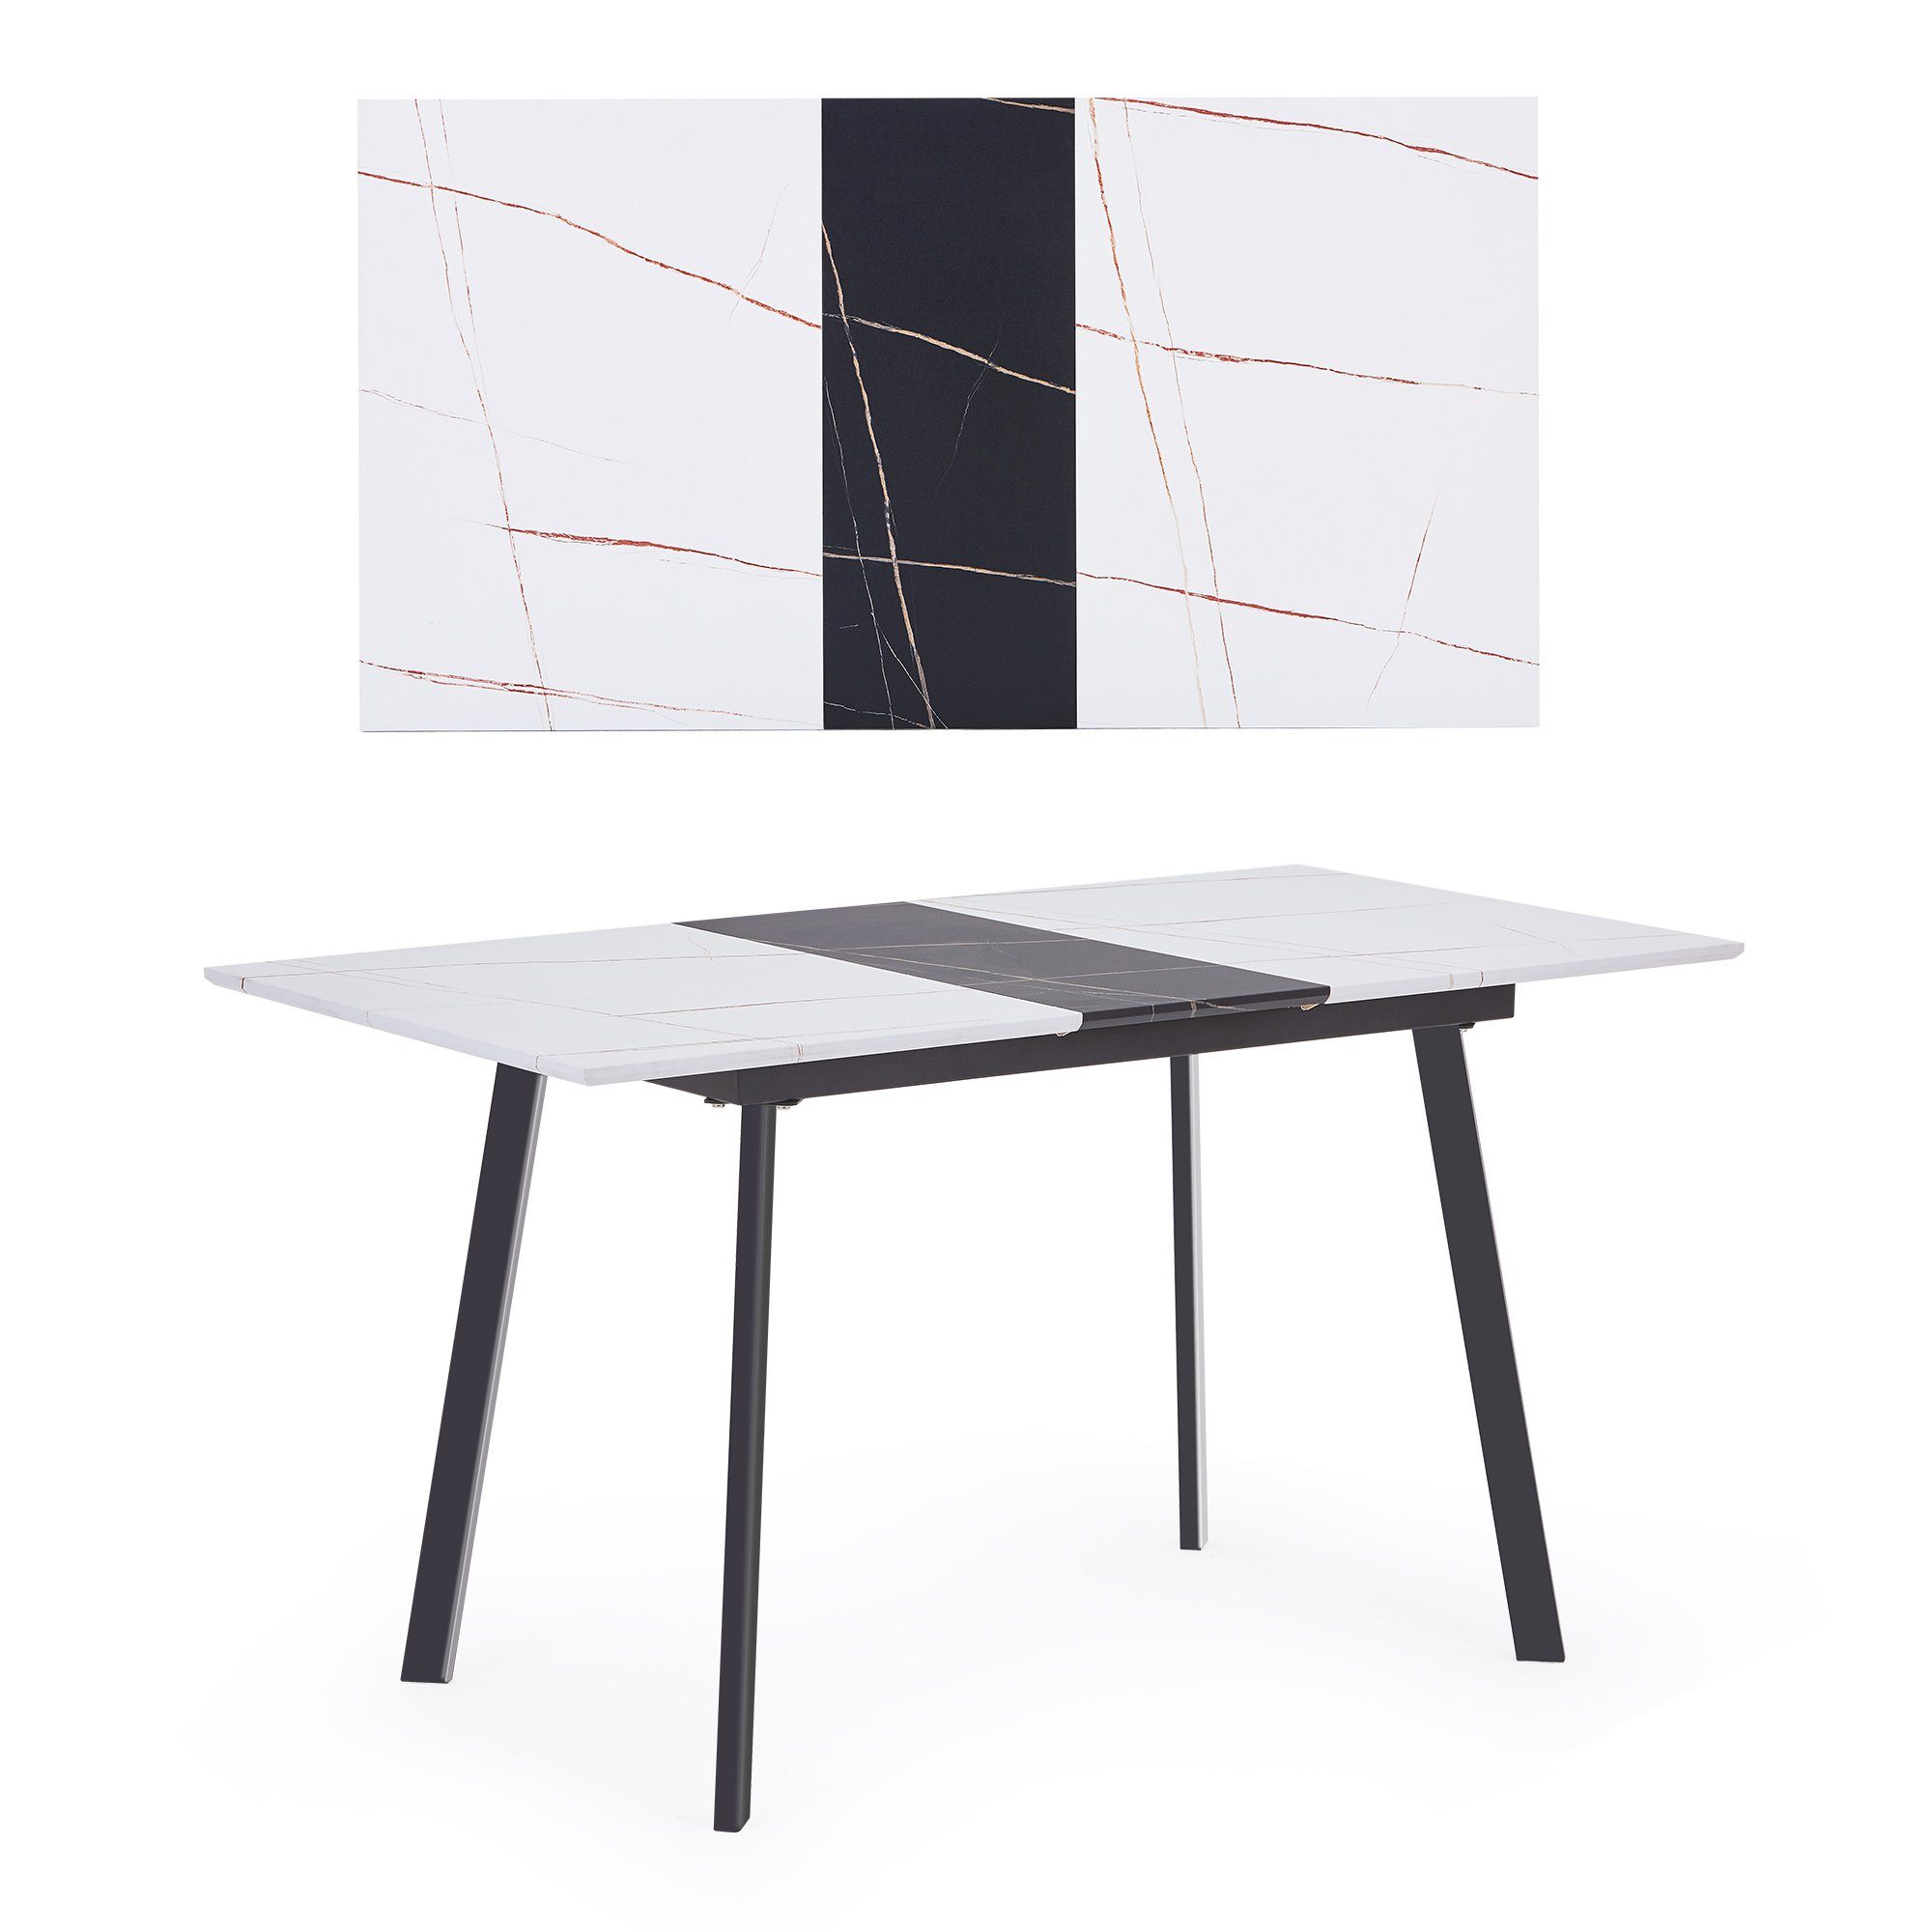 Esszimmertisch mit Arbeitstisch Metallbeine, Merax ausziehbar 110-140cm Schwarz Esstisch,